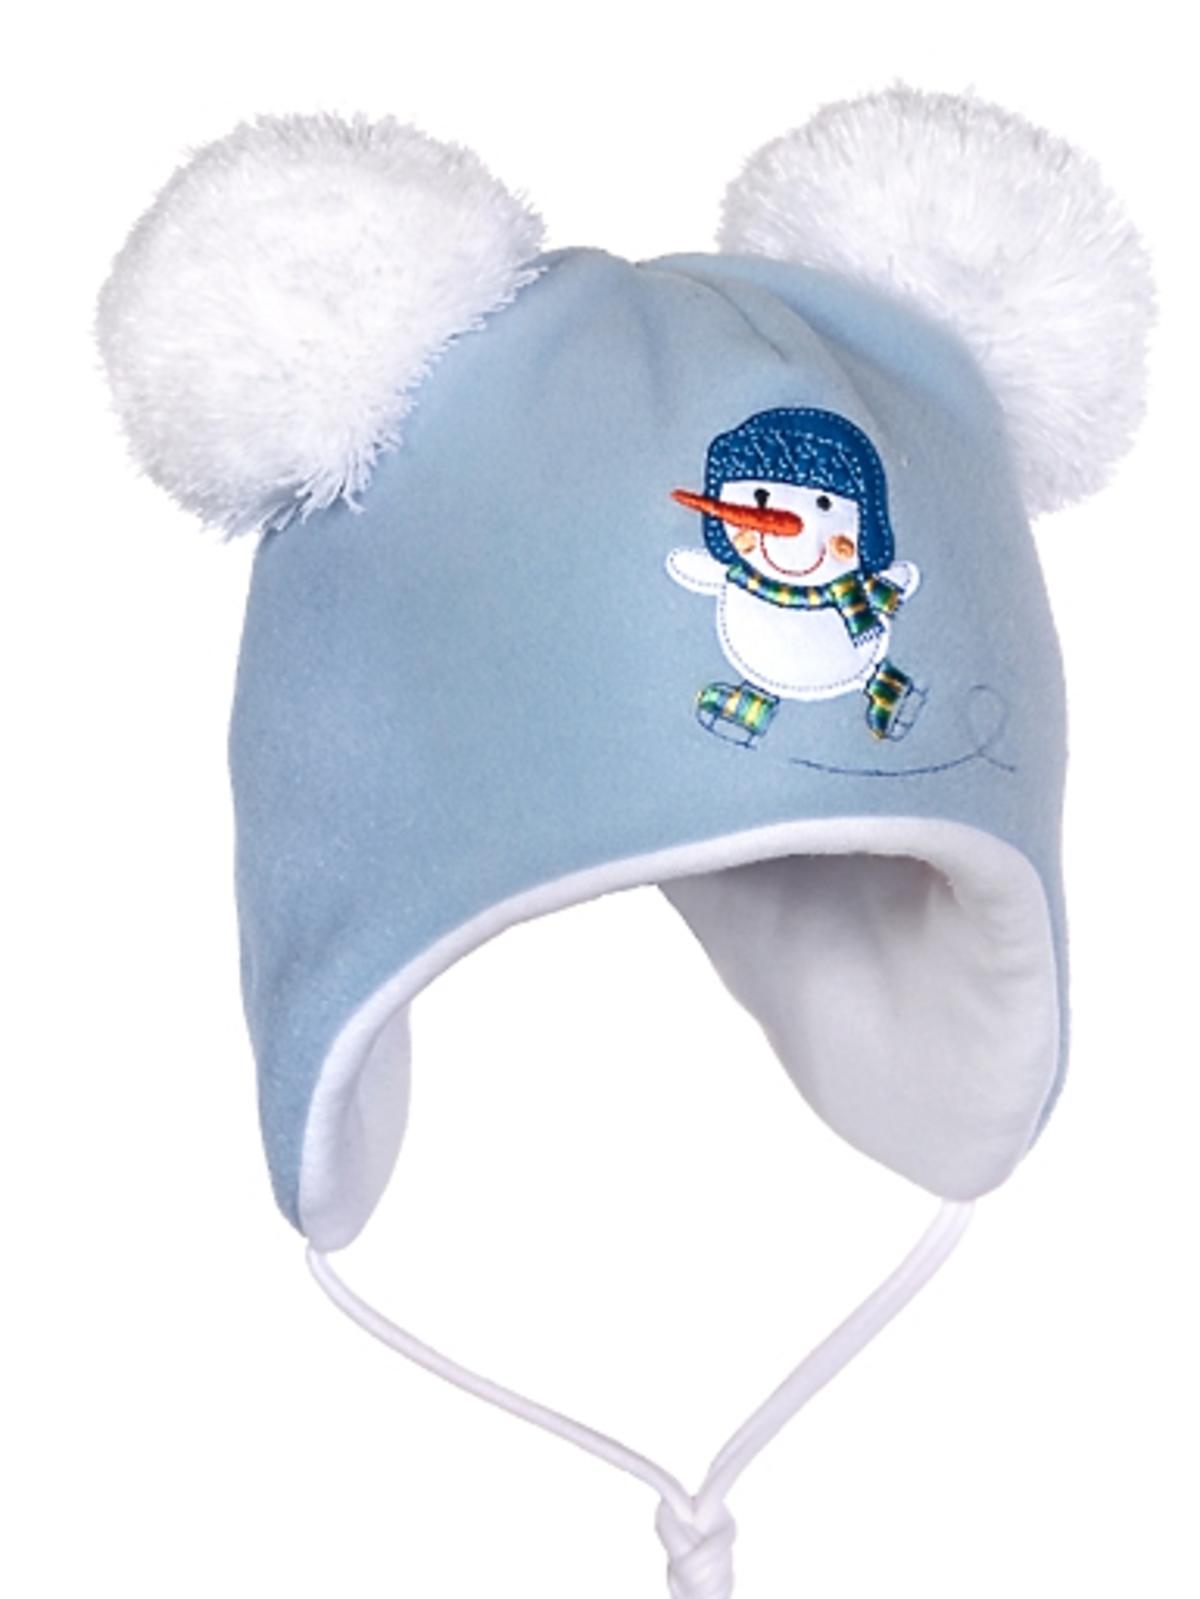 zimowa czapeczka dla dziecka z bałwankiem